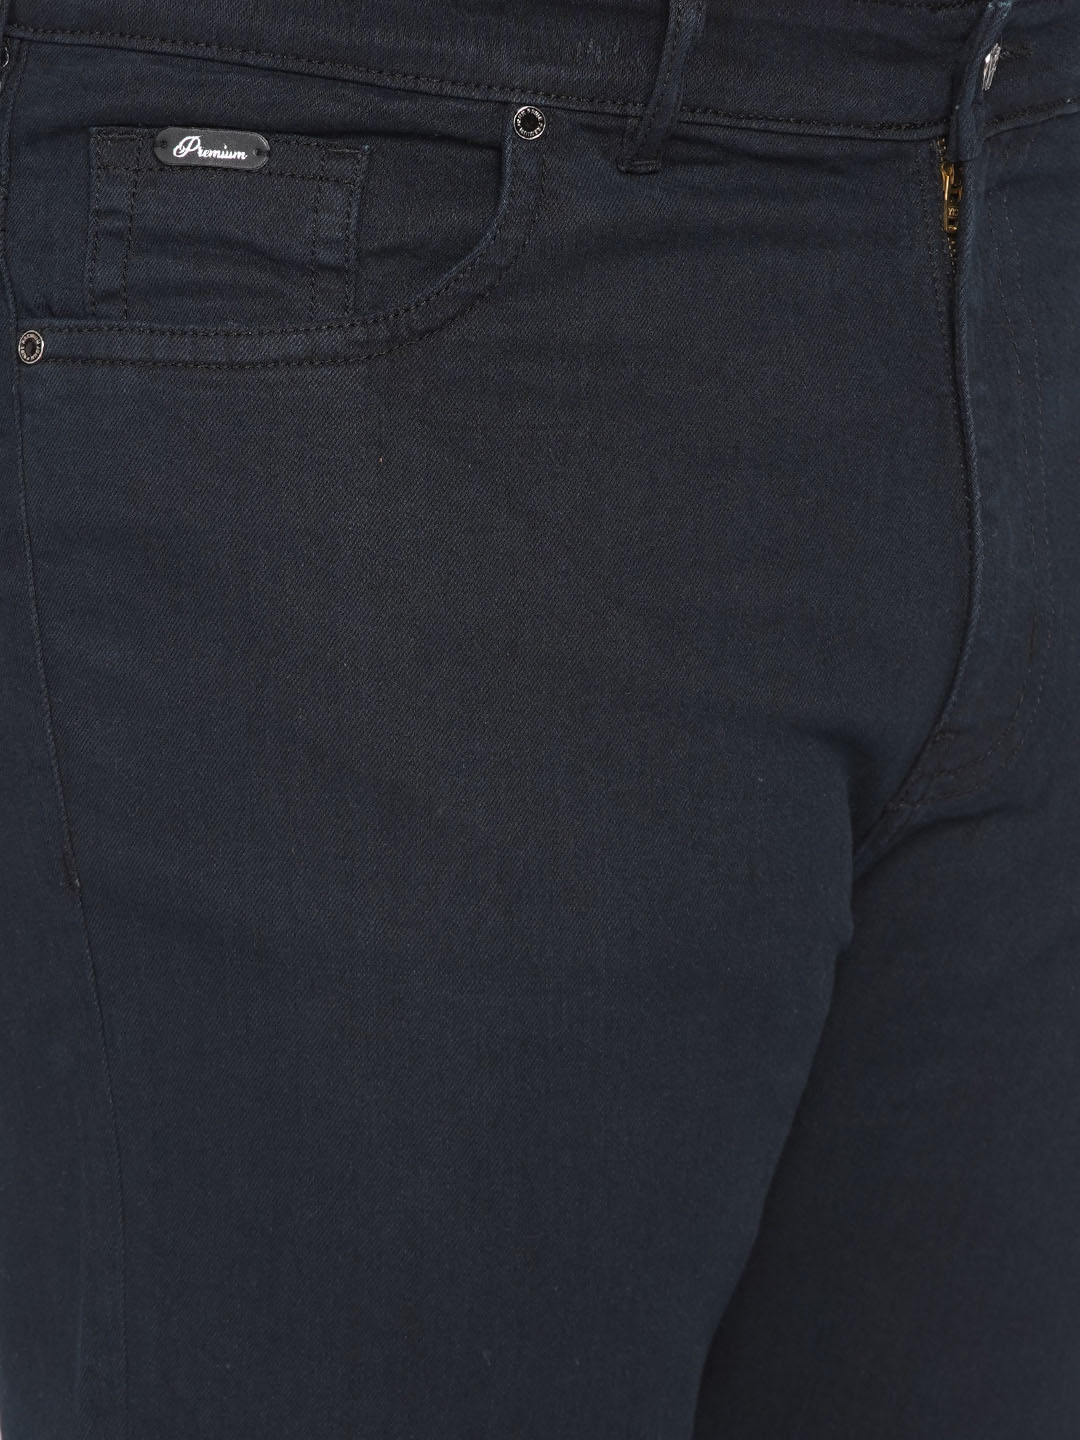 bottomwear/jeans/JPJ12258/jpj12258-2.jpg